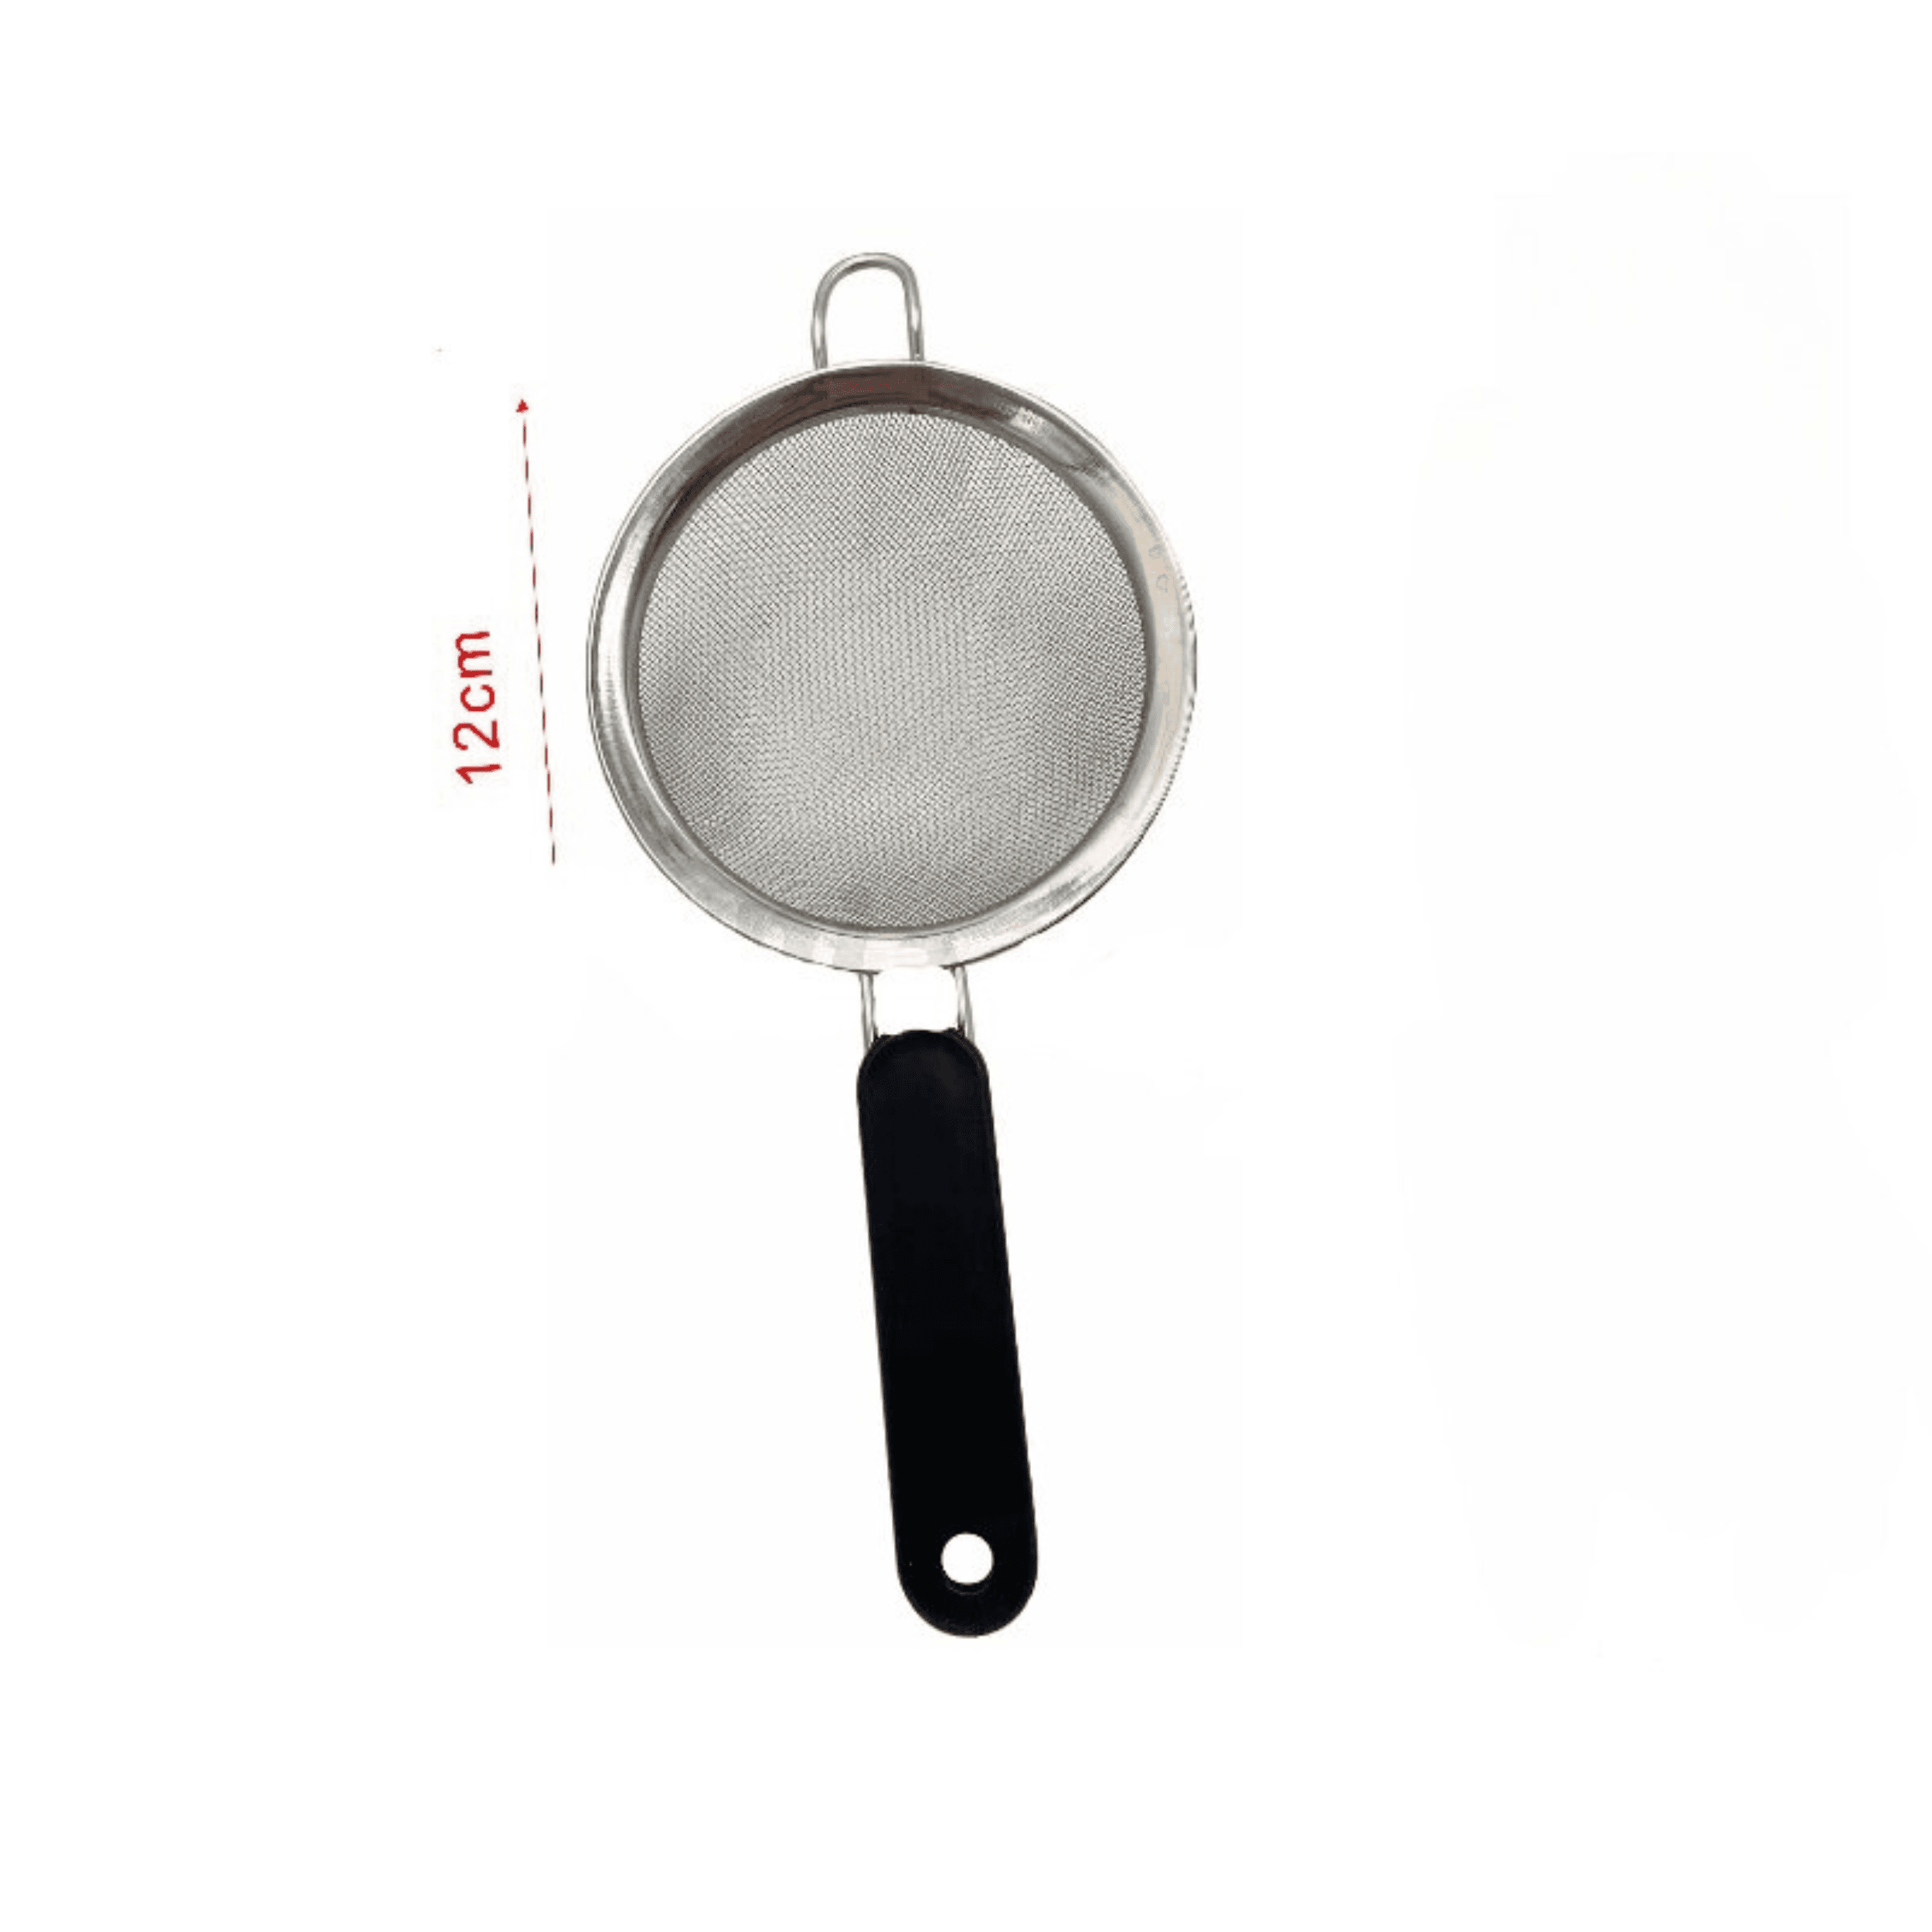 Sitko kuchenne 12 cm z rączką